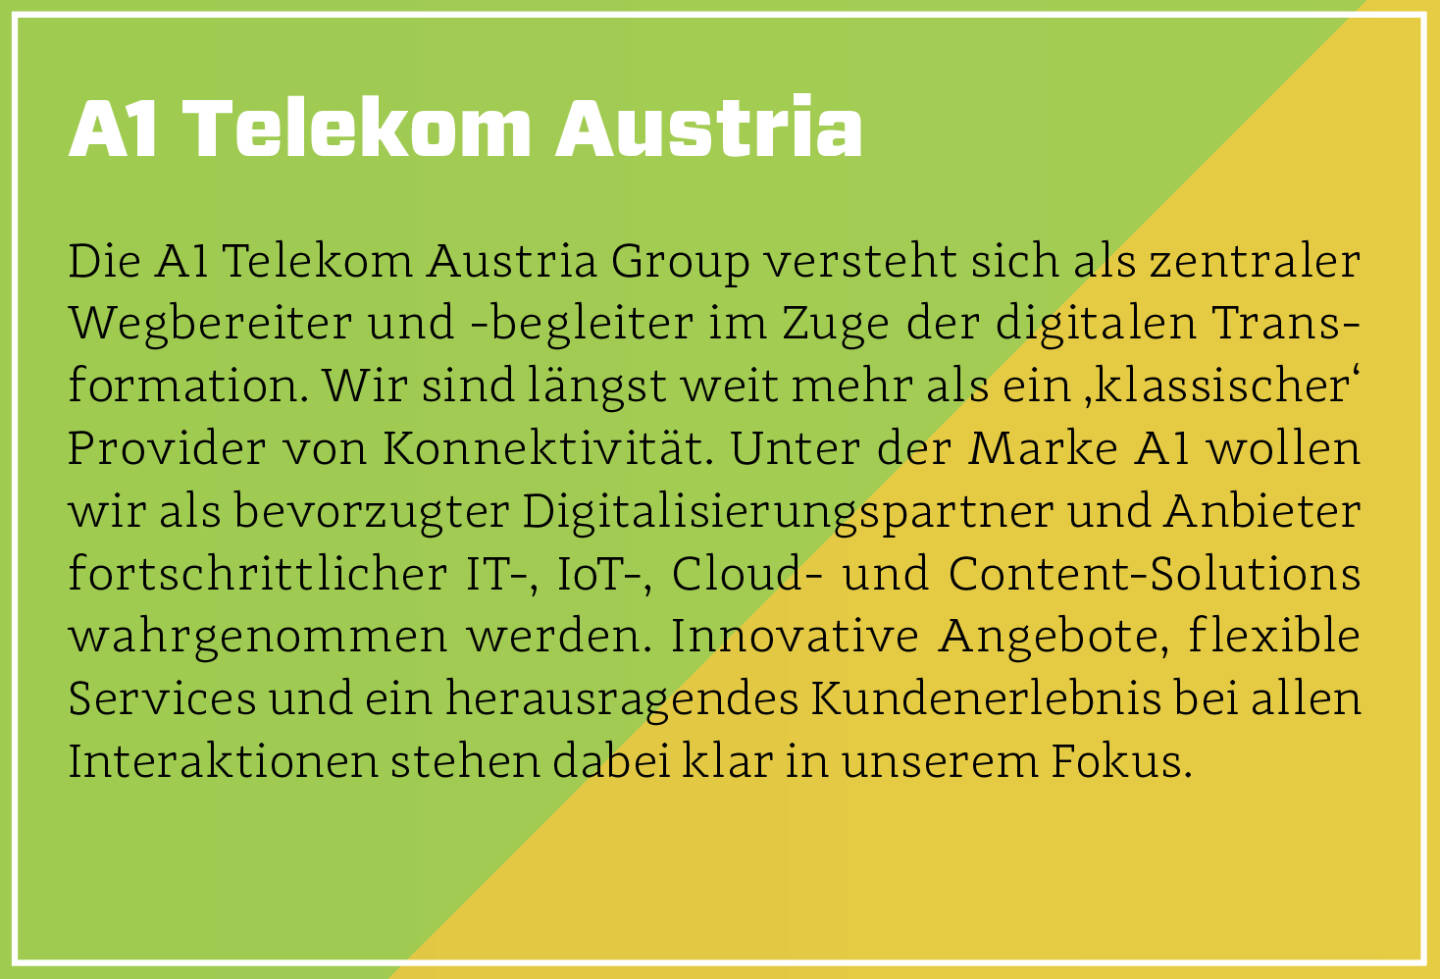 A1 Telekom Austria - Die A1 Telekom Austria Group versteht sich als zentraler Wegbereiter und -begleiter im Zuge der digitalen Transformation. Wir sind längst weit mehr als ein ‚klassischer‘ Provider von Konnektivität. Unter der Marke A1 wollen wir als bevorzugter Digitalisierungspartner und Anbieter fortschrittlicher IT-, IoT-, Cloud- und Content-Solutions wahrgenommen werden. Innovative Angebote, flexible Services und ein herausragendes Kundenerlebnis bei allen Interaktionen stehen dabei klar in unserem Fokus.
